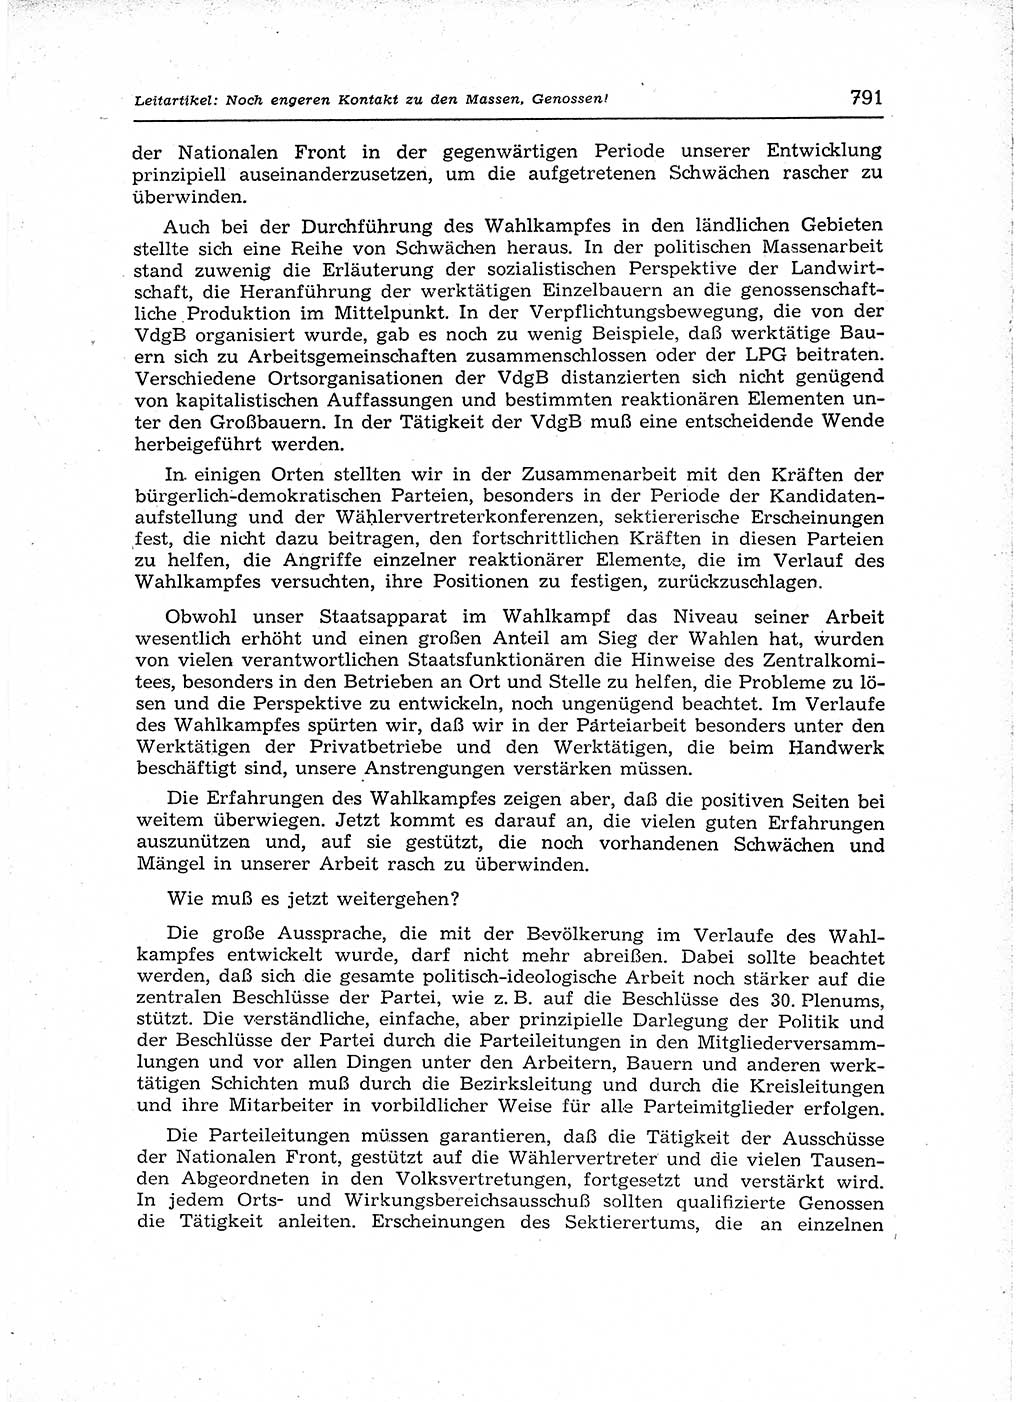 Neuer Weg (NW), Organ des Zentralkomitees (ZK) der SED (Sozialistische Einheitspartei Deutschlands) für Fragen des Parteiaufbaus und des Parteilebens, 12. Jahrgang [Deutsche Demokratische Republik (DDR)] 1957, Seite 791 (NW ZK SED DDR 1957, S. 791)